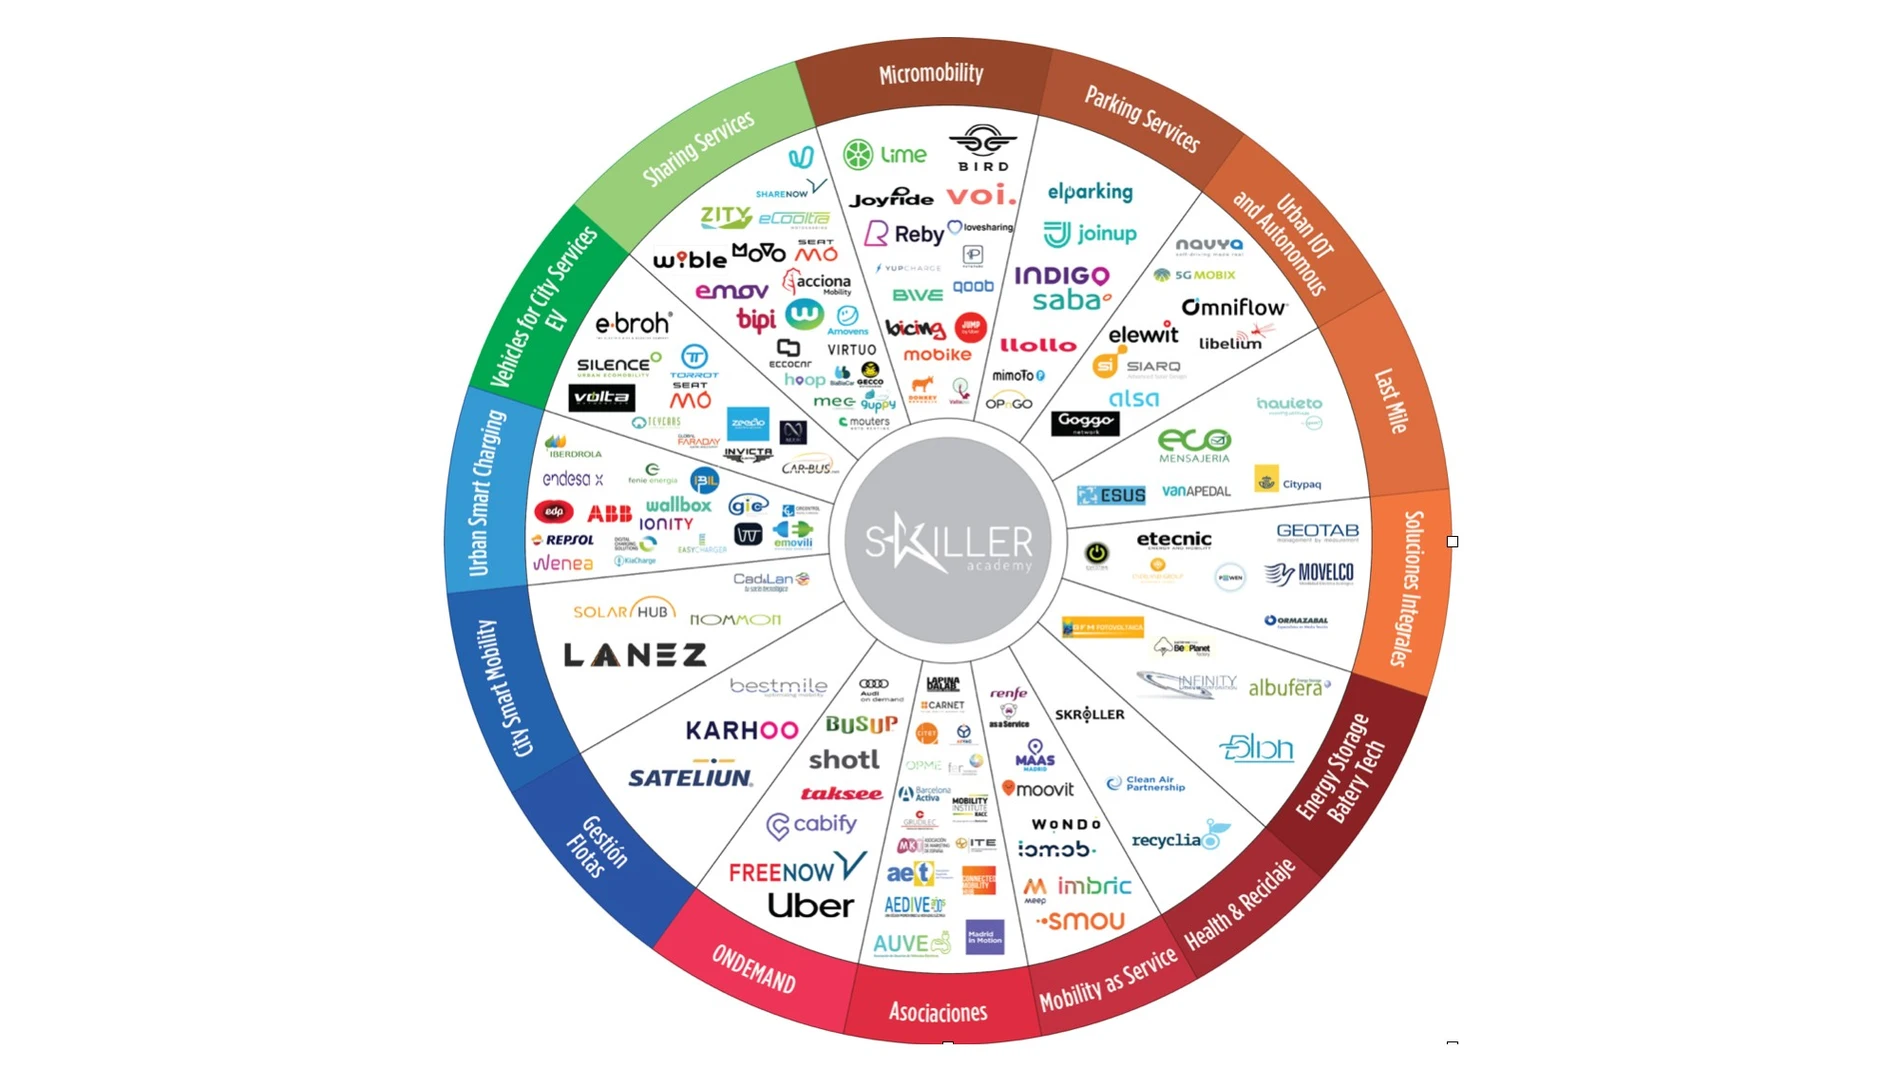 El mapa surge ante una necesidad de identificar los principales players en la transformación digital del rol de compras detectada por sus principales promotores